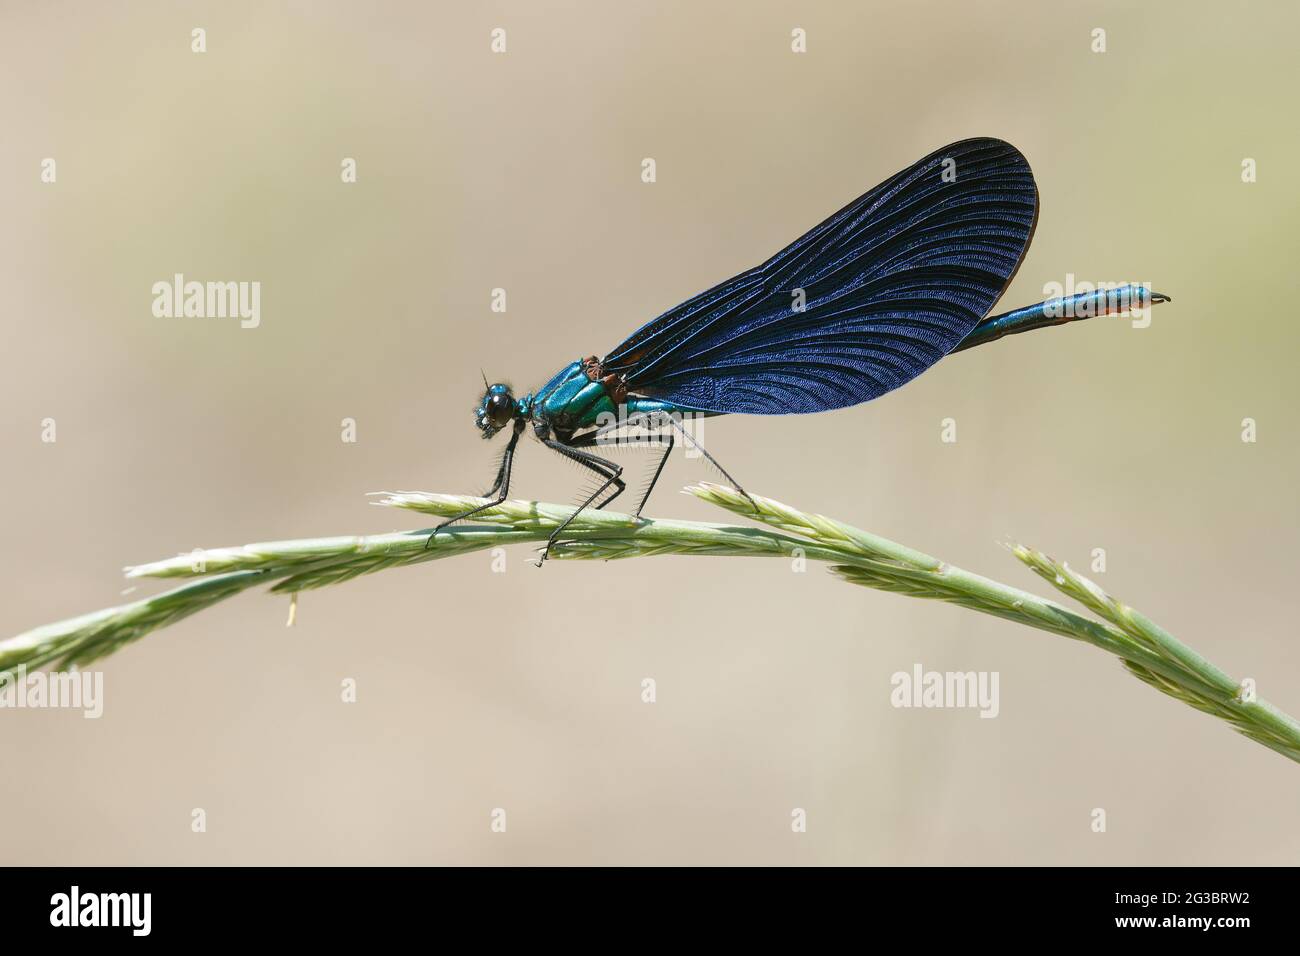 Belle Demoiselle mâle (Calopteryx virgo) vue en profil sur la tête de semence d'herbe Banque D'Images